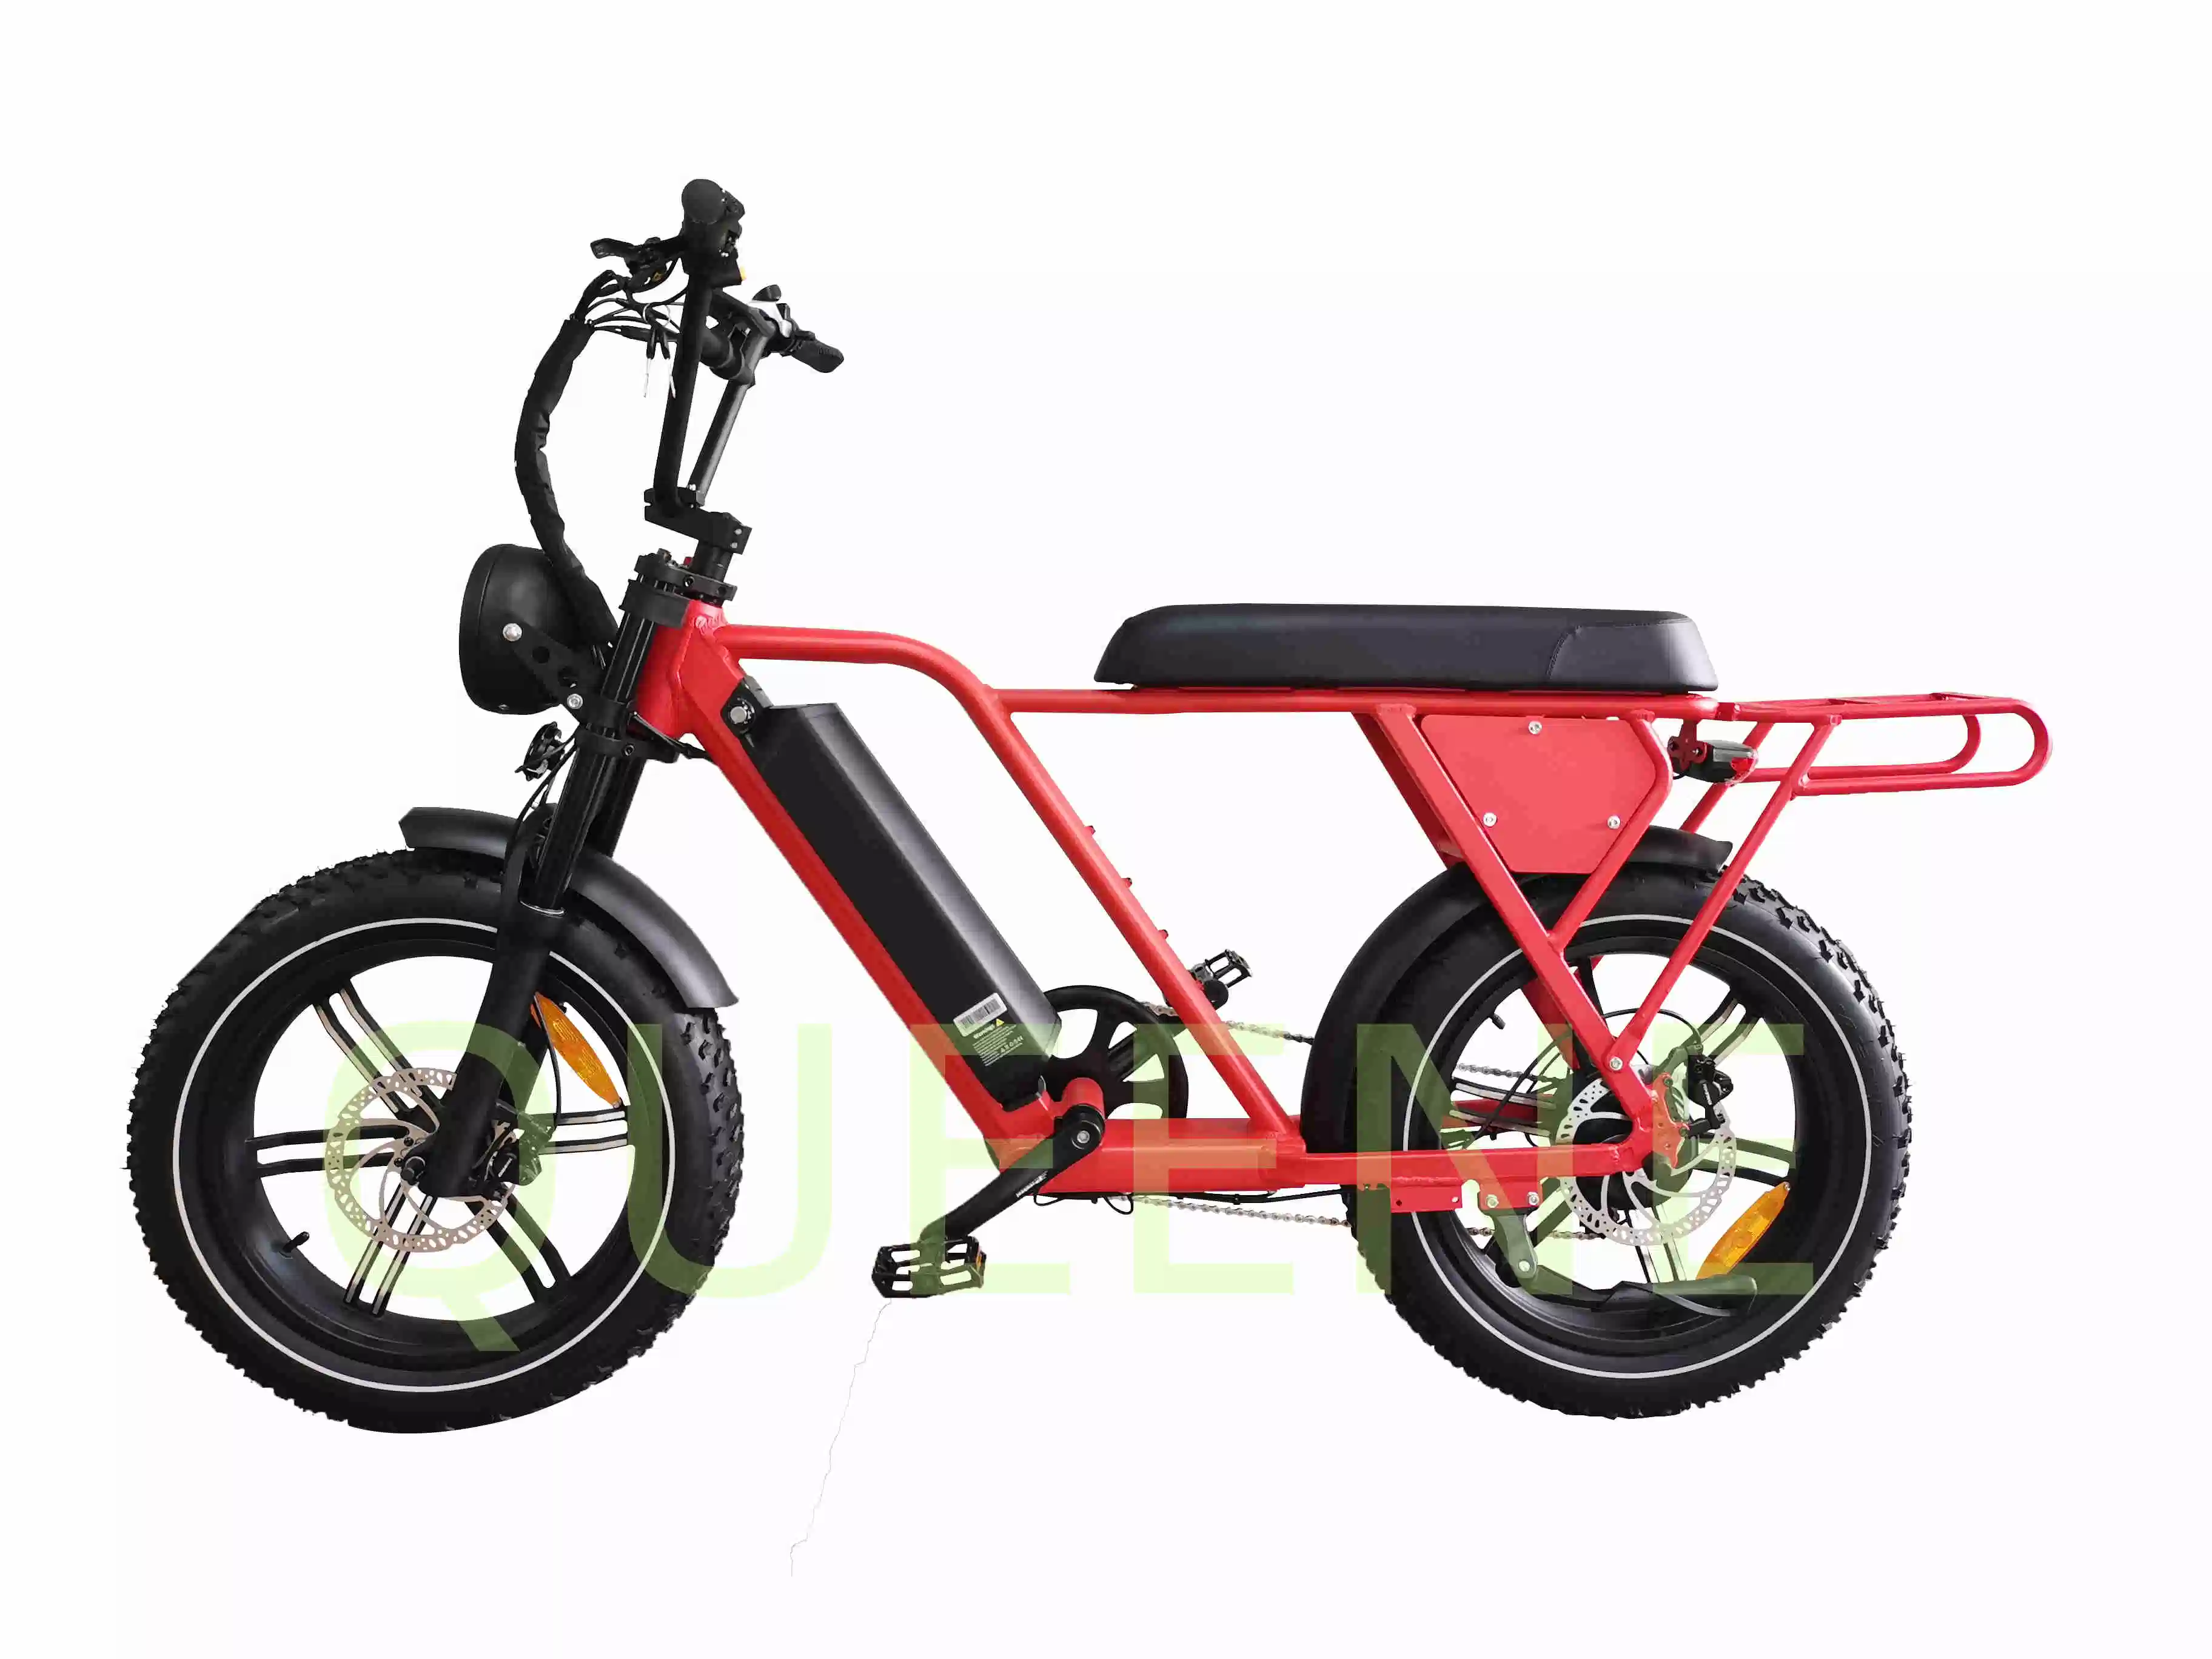 Novo Design/Rainha das 500W750W 48V motor do Cubo Traseiro Beach Vintage de 20 polegadas e uma bicicleta elétrica Retro Sujeira Bike Fast Ebike de Alta Velocidade